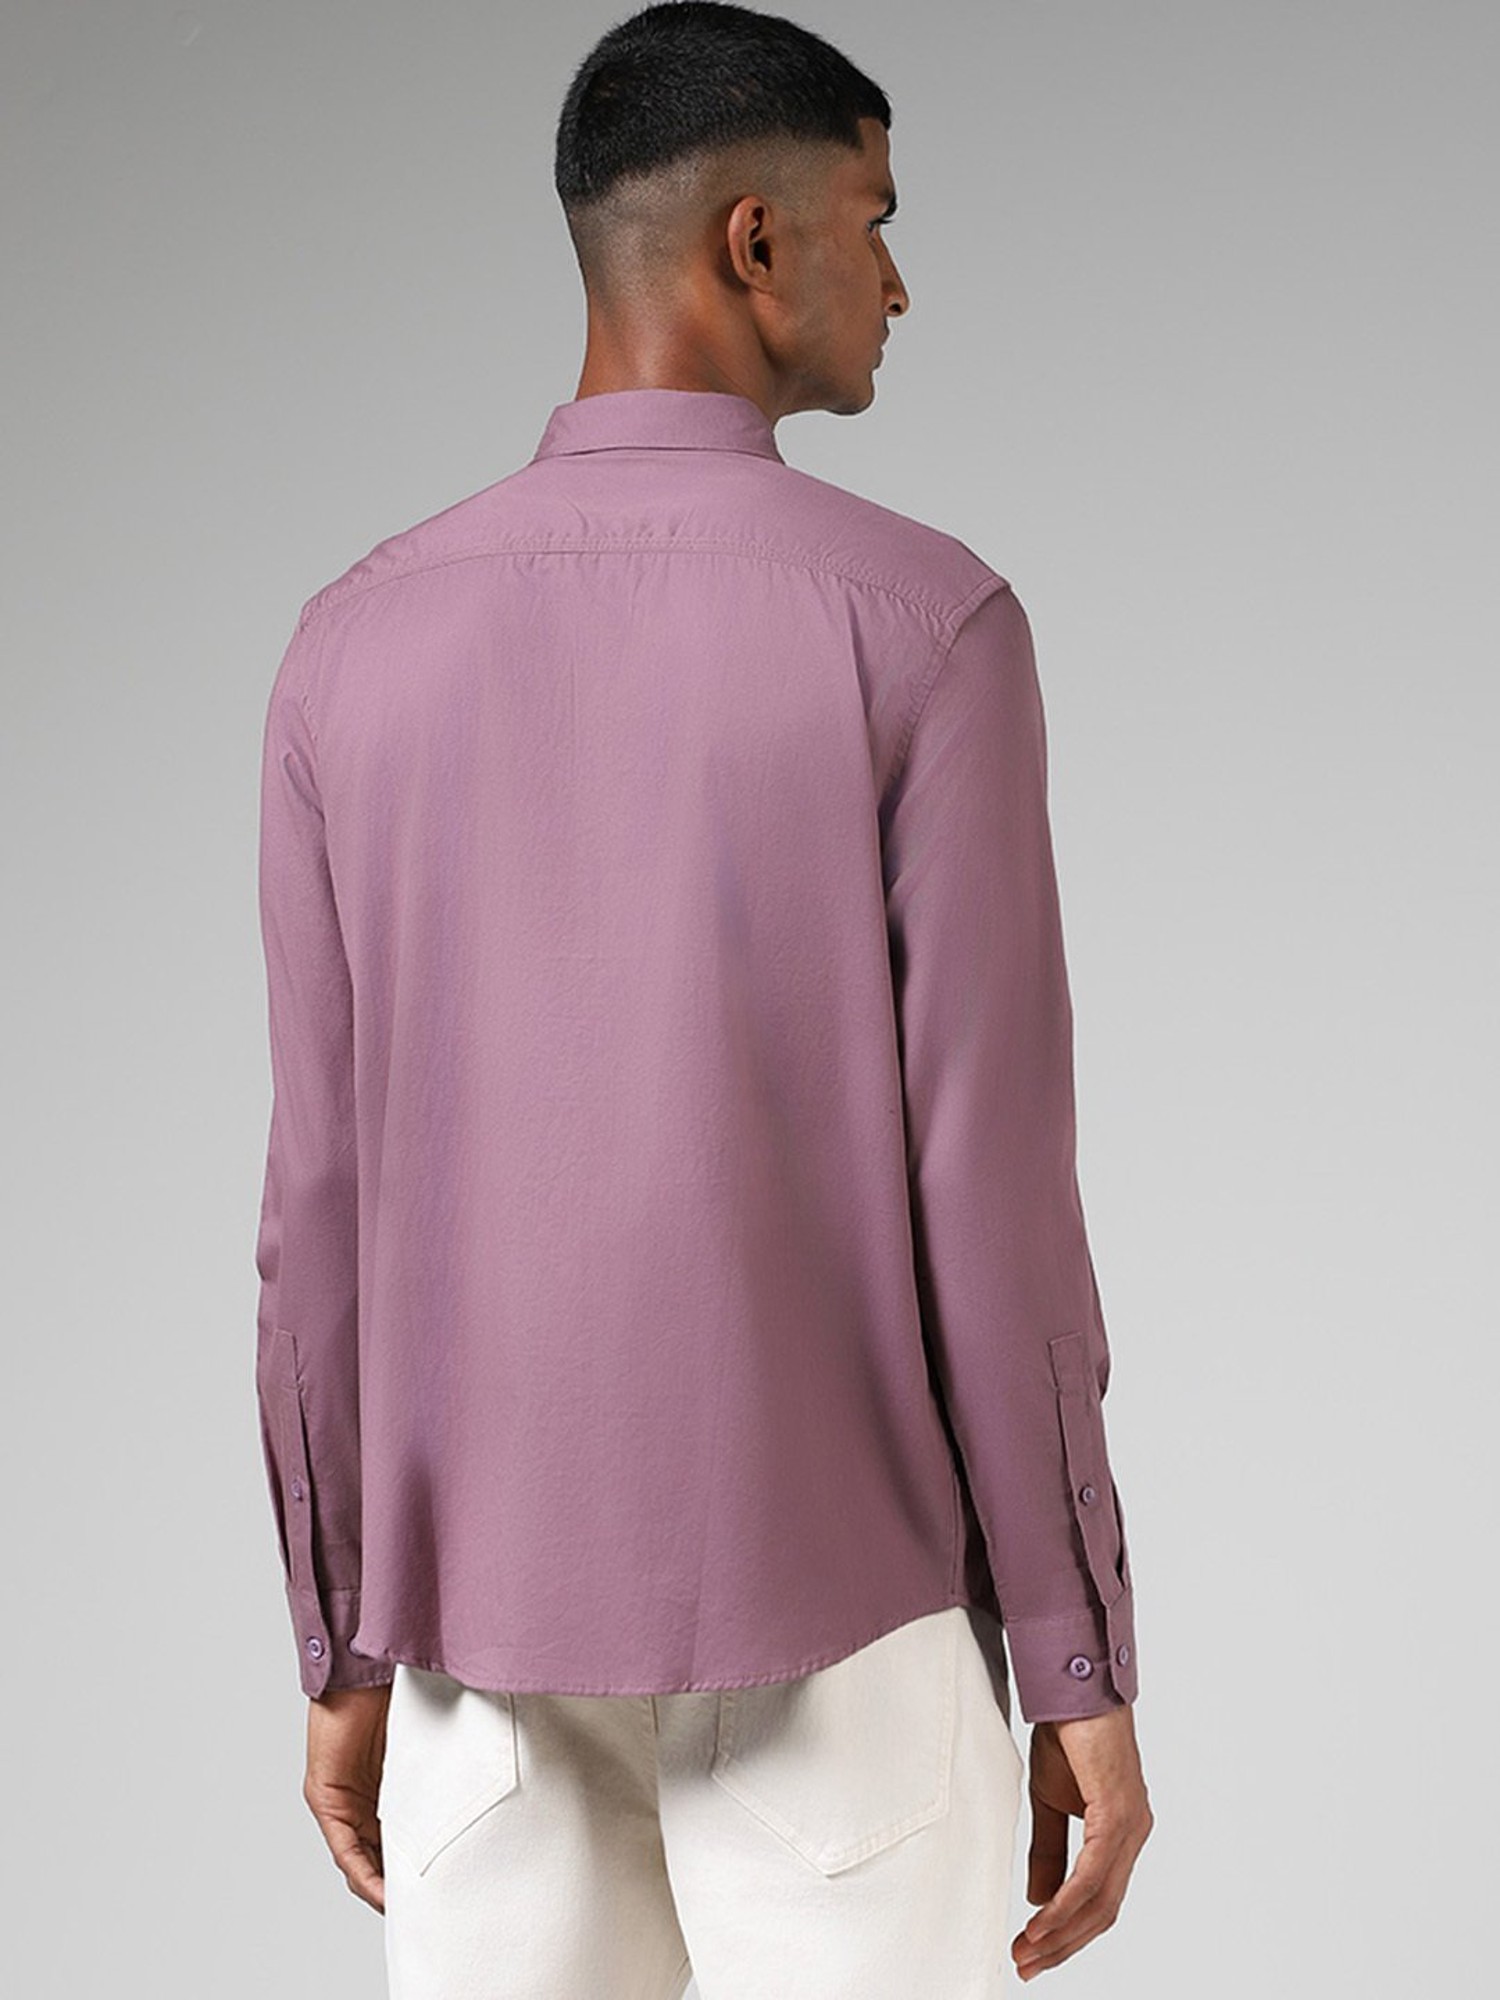 Purple Shirt Matching Pant || Purple Shirt Combination Pants - TiptopGents  | Purple shirt, Combination pants, Blue pants